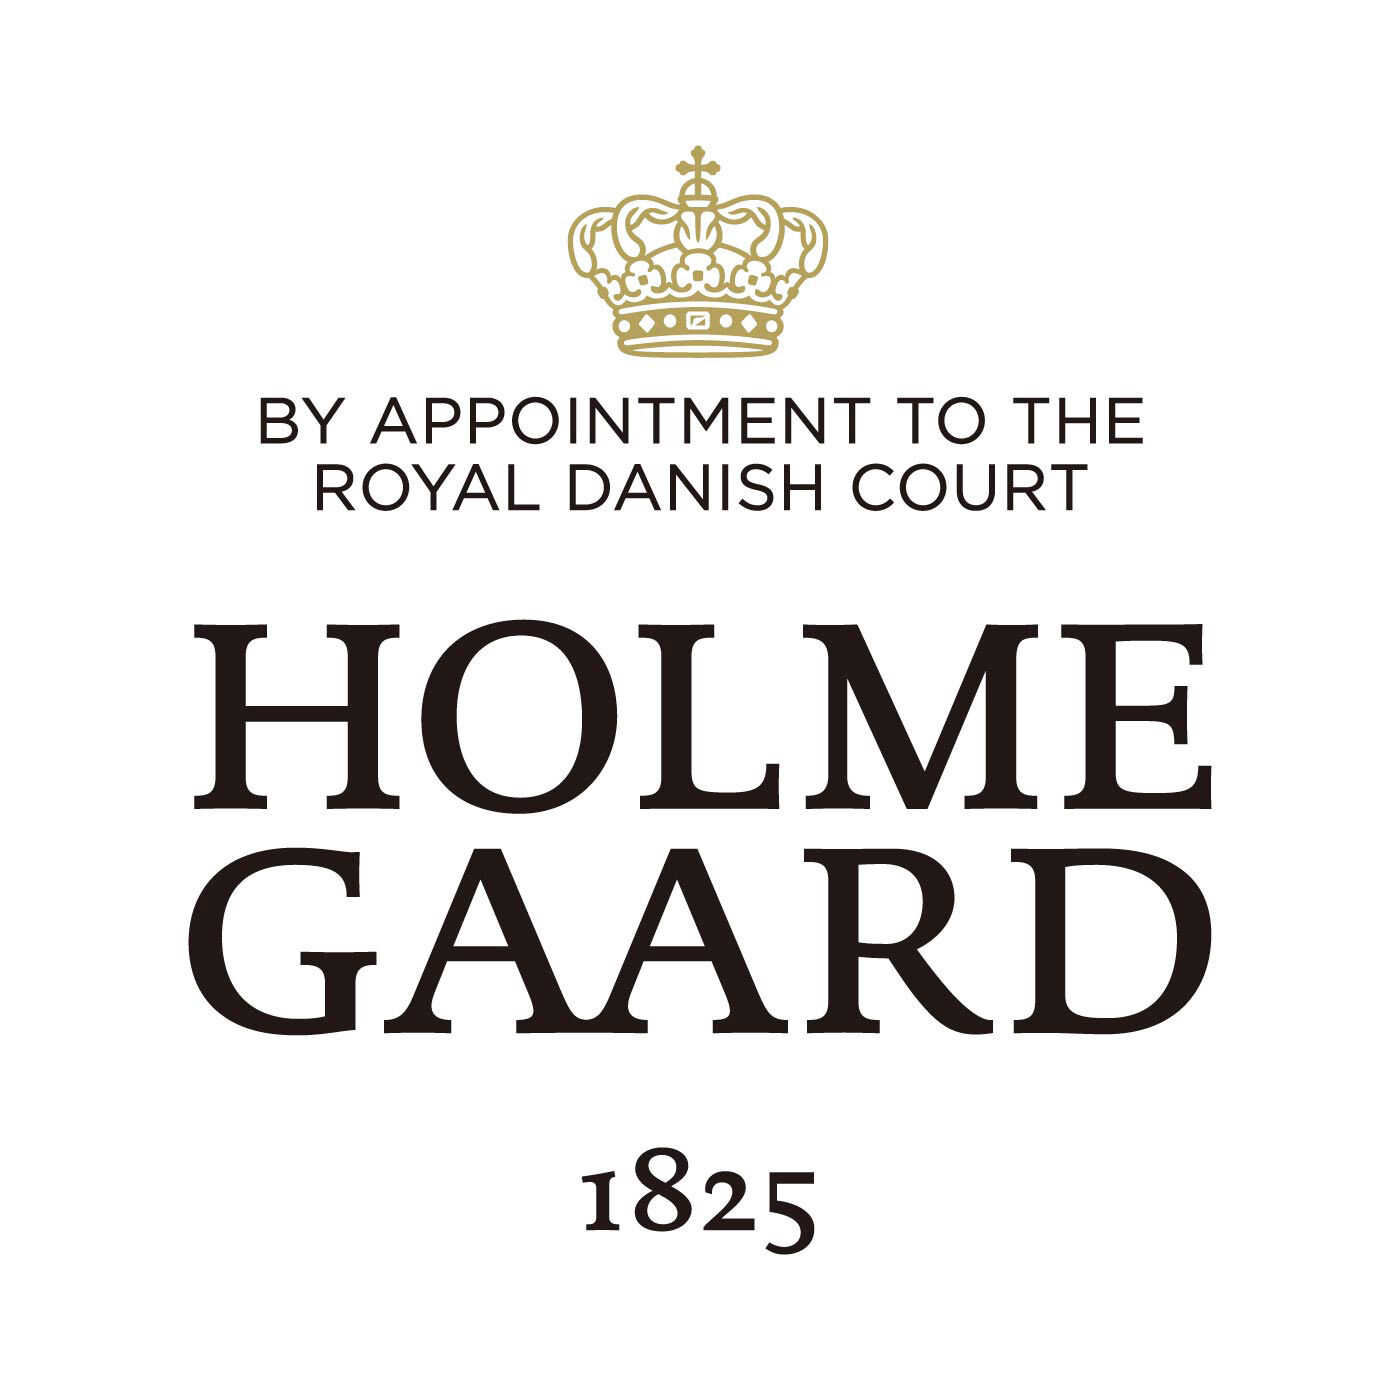 SeeMONO|ガラスのウェーブが美しい　一年中飾れるクリスマスツリー〈ＸＬグリーン〉／ホルムガード|HOLMEGAARD（ホルムガード）は、1825年にデンマークに生まれた伝統あるガラスブランドです。1900年代、多くの芸術家が手掛け始めるホルムガードの商品は、そのクオリティの高さからデンマーク王室 御用達ブランドに選ばれました。熟練の職人たちによる吹きガラス製法で生み出されるユニークなデ ザインのガラス製品は世界中の美術館に所蔵されています。